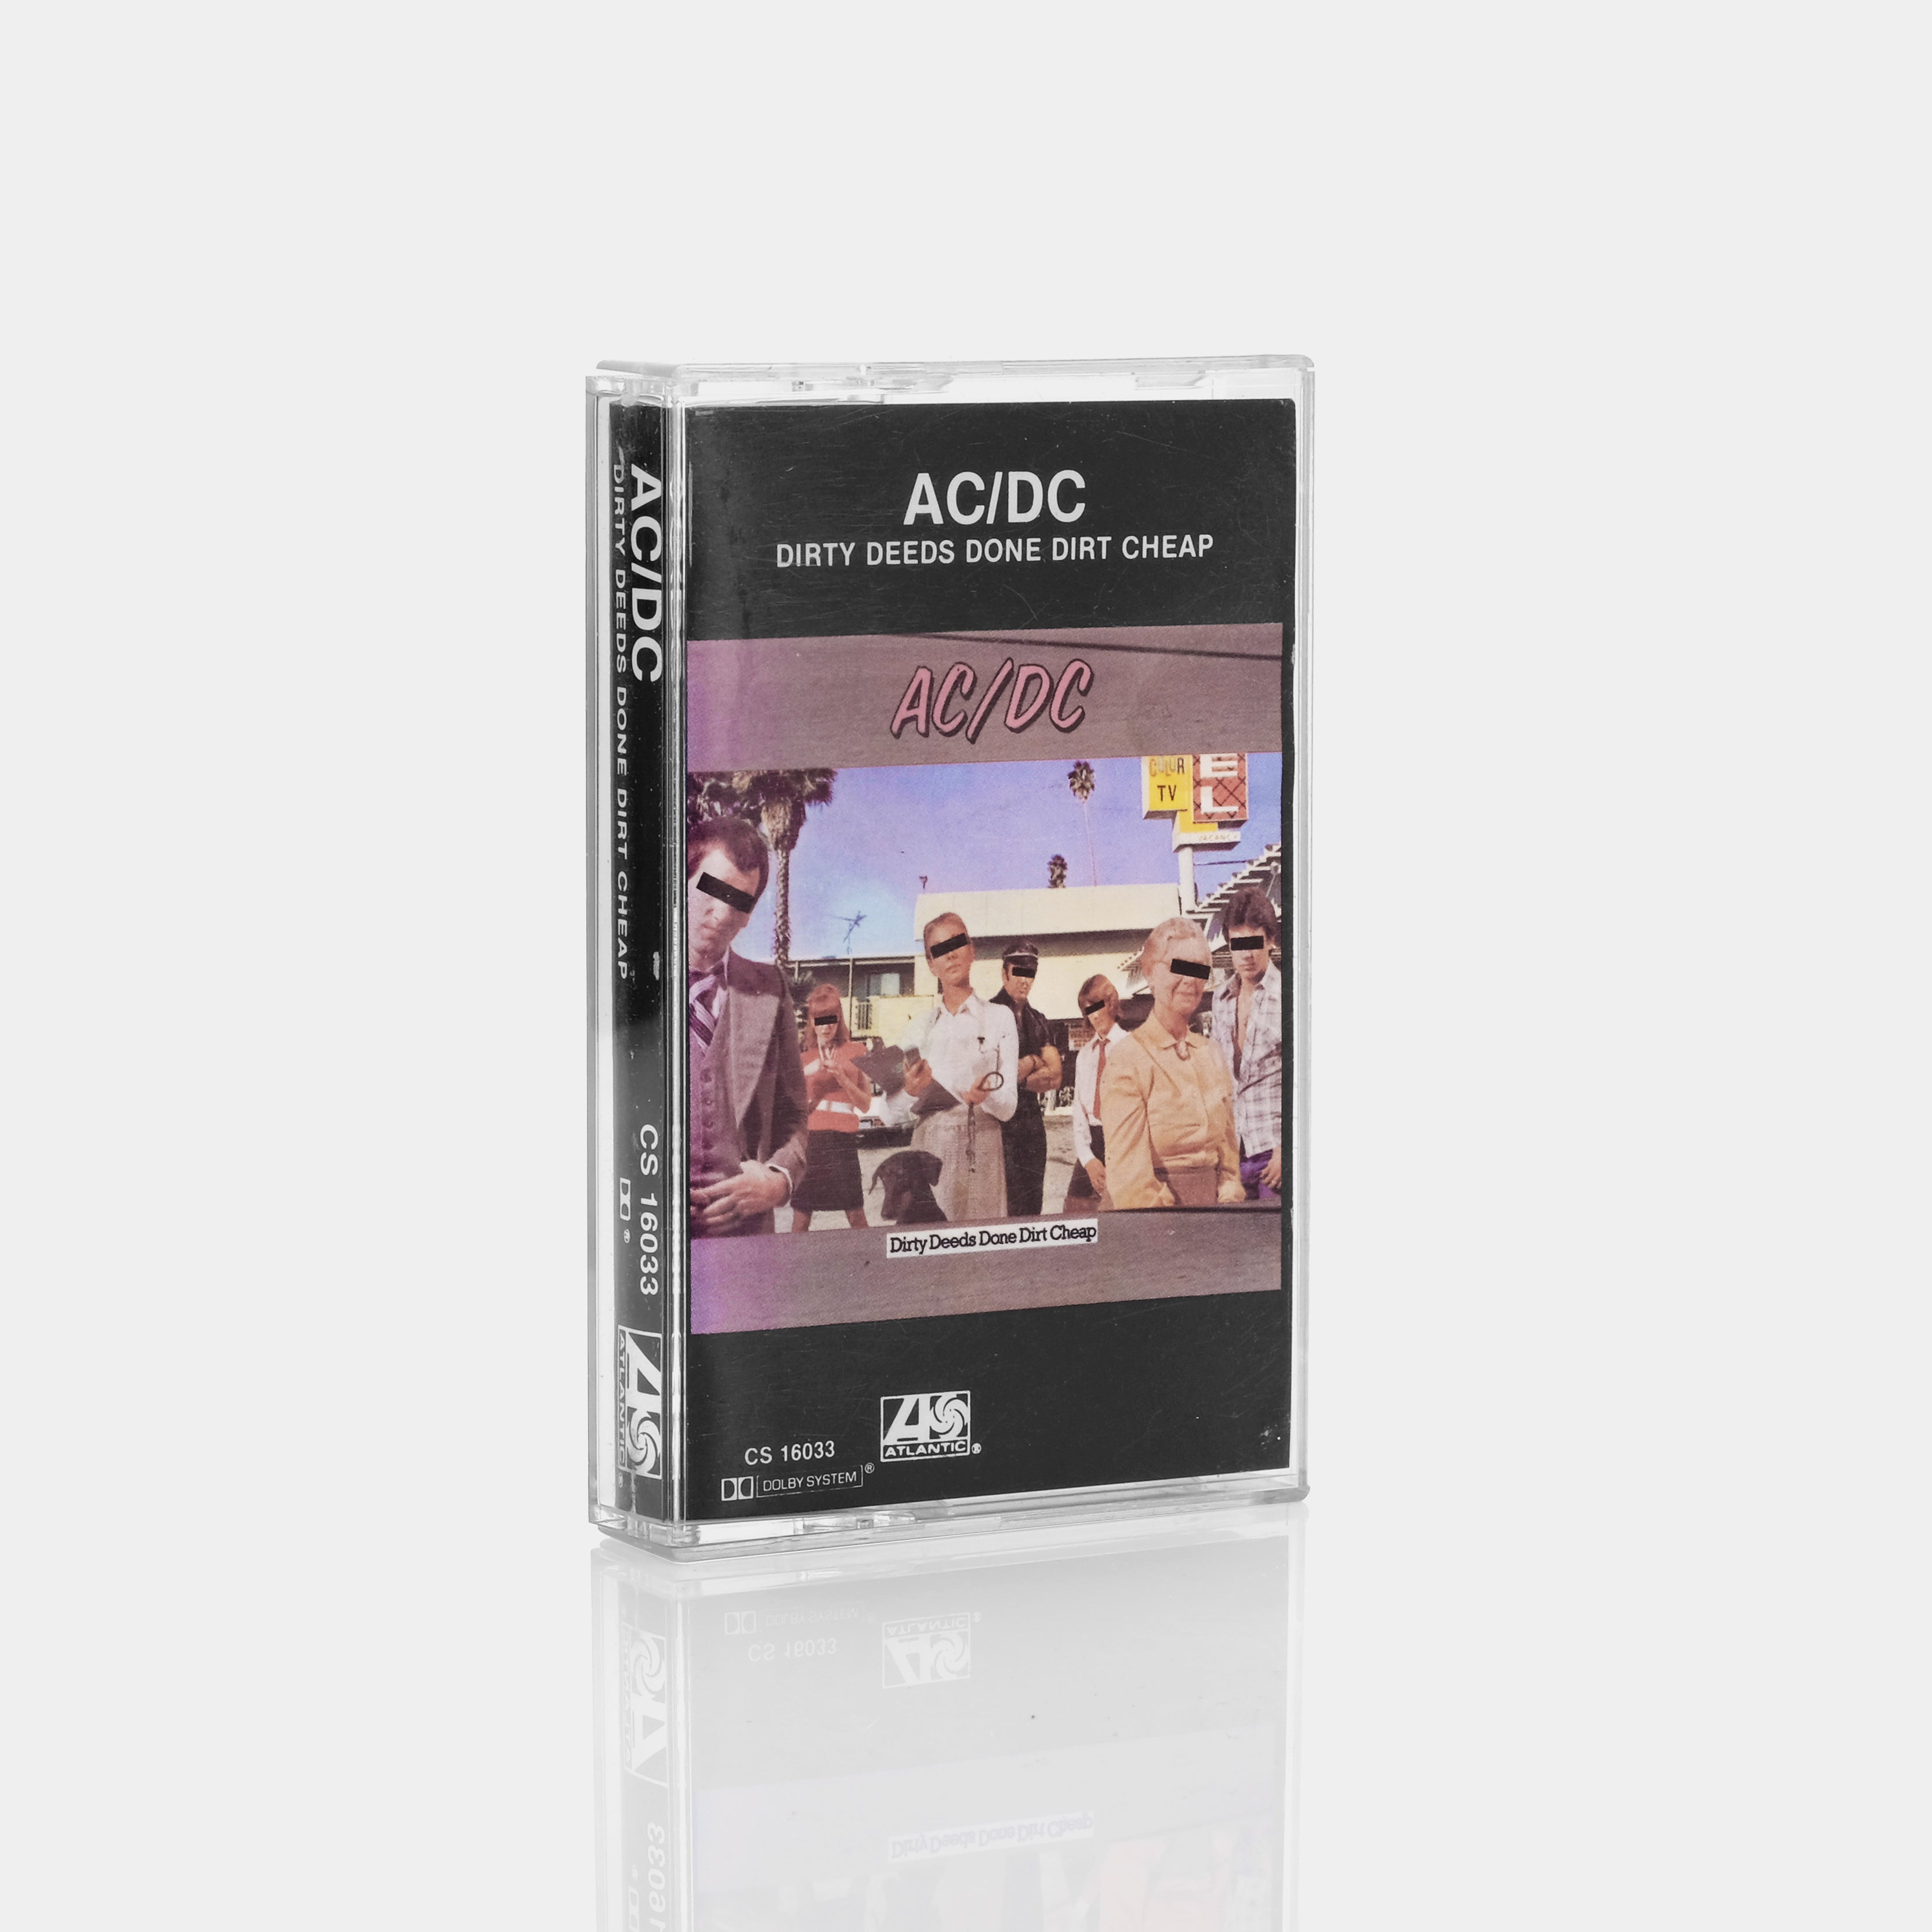 AC/DC - Dirty Deeds Done Dirt Cheap Cassette Tape